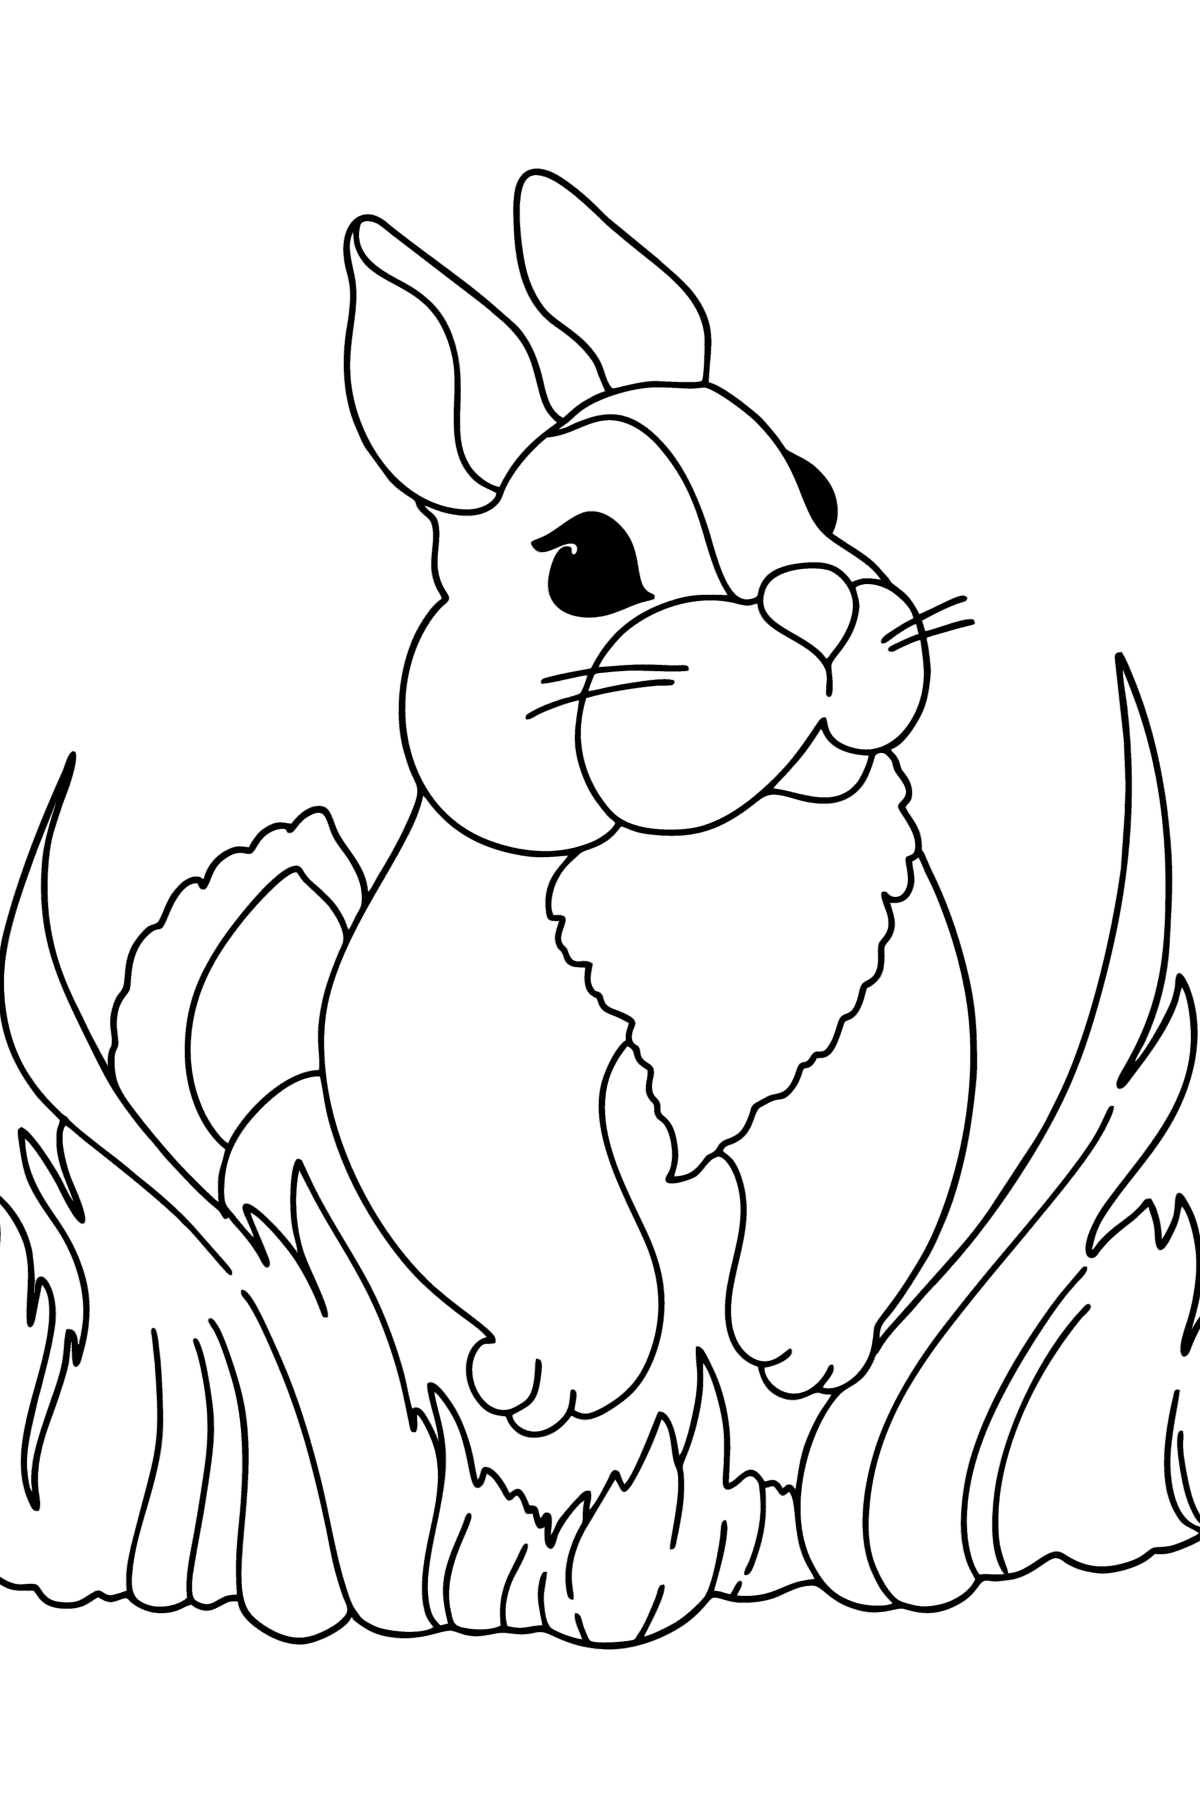 Målarbild fluffig kanin - Målarbilder För barn